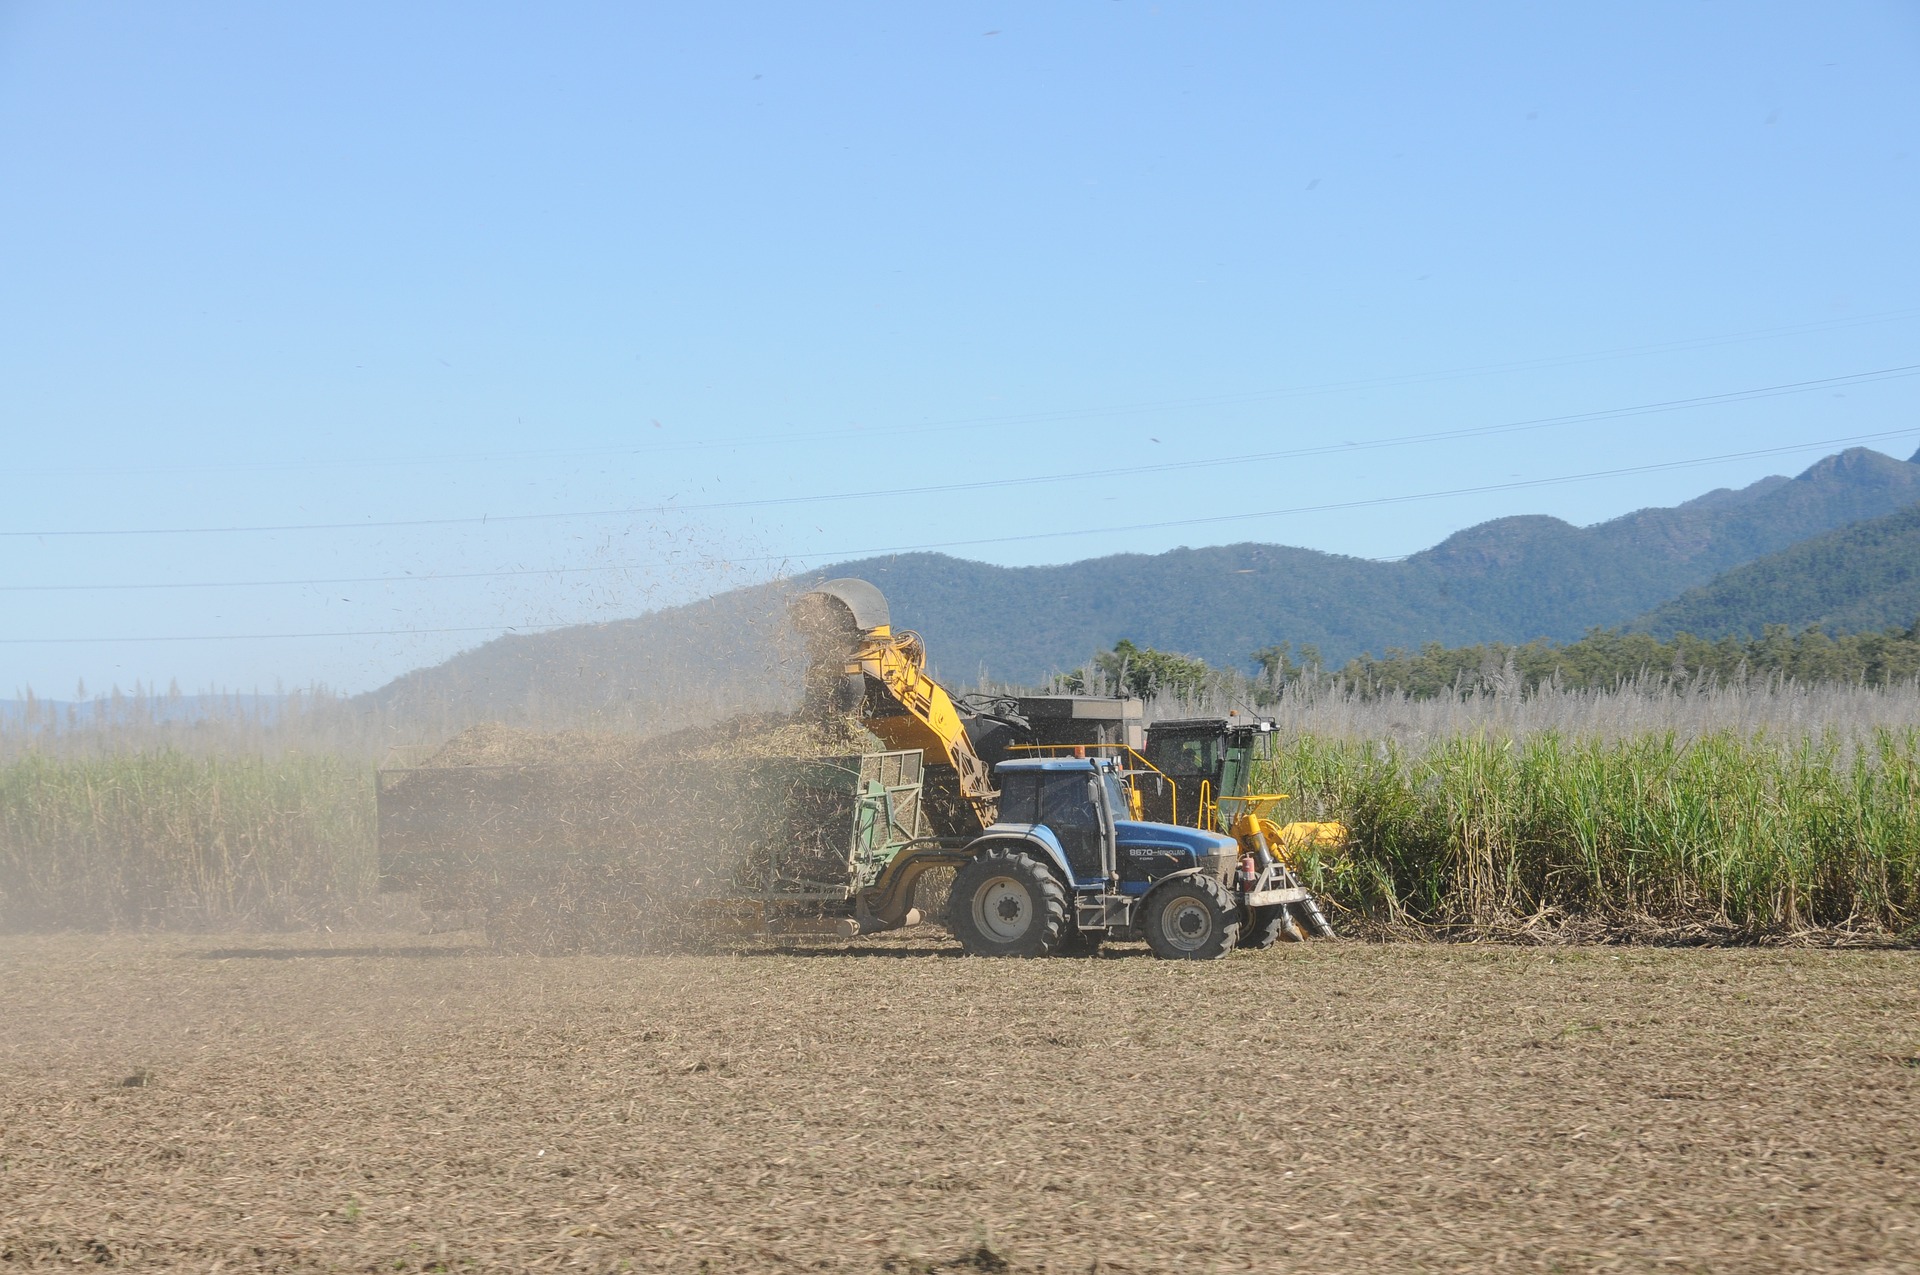 Tecnologia brasileira promete elevar em 120% a extração de açúcar para etanol 2G. Na imagem: Tratores em operação em lavoura de cana-de-açúcar (Foto: Kathryn Bowman/Pixabay)